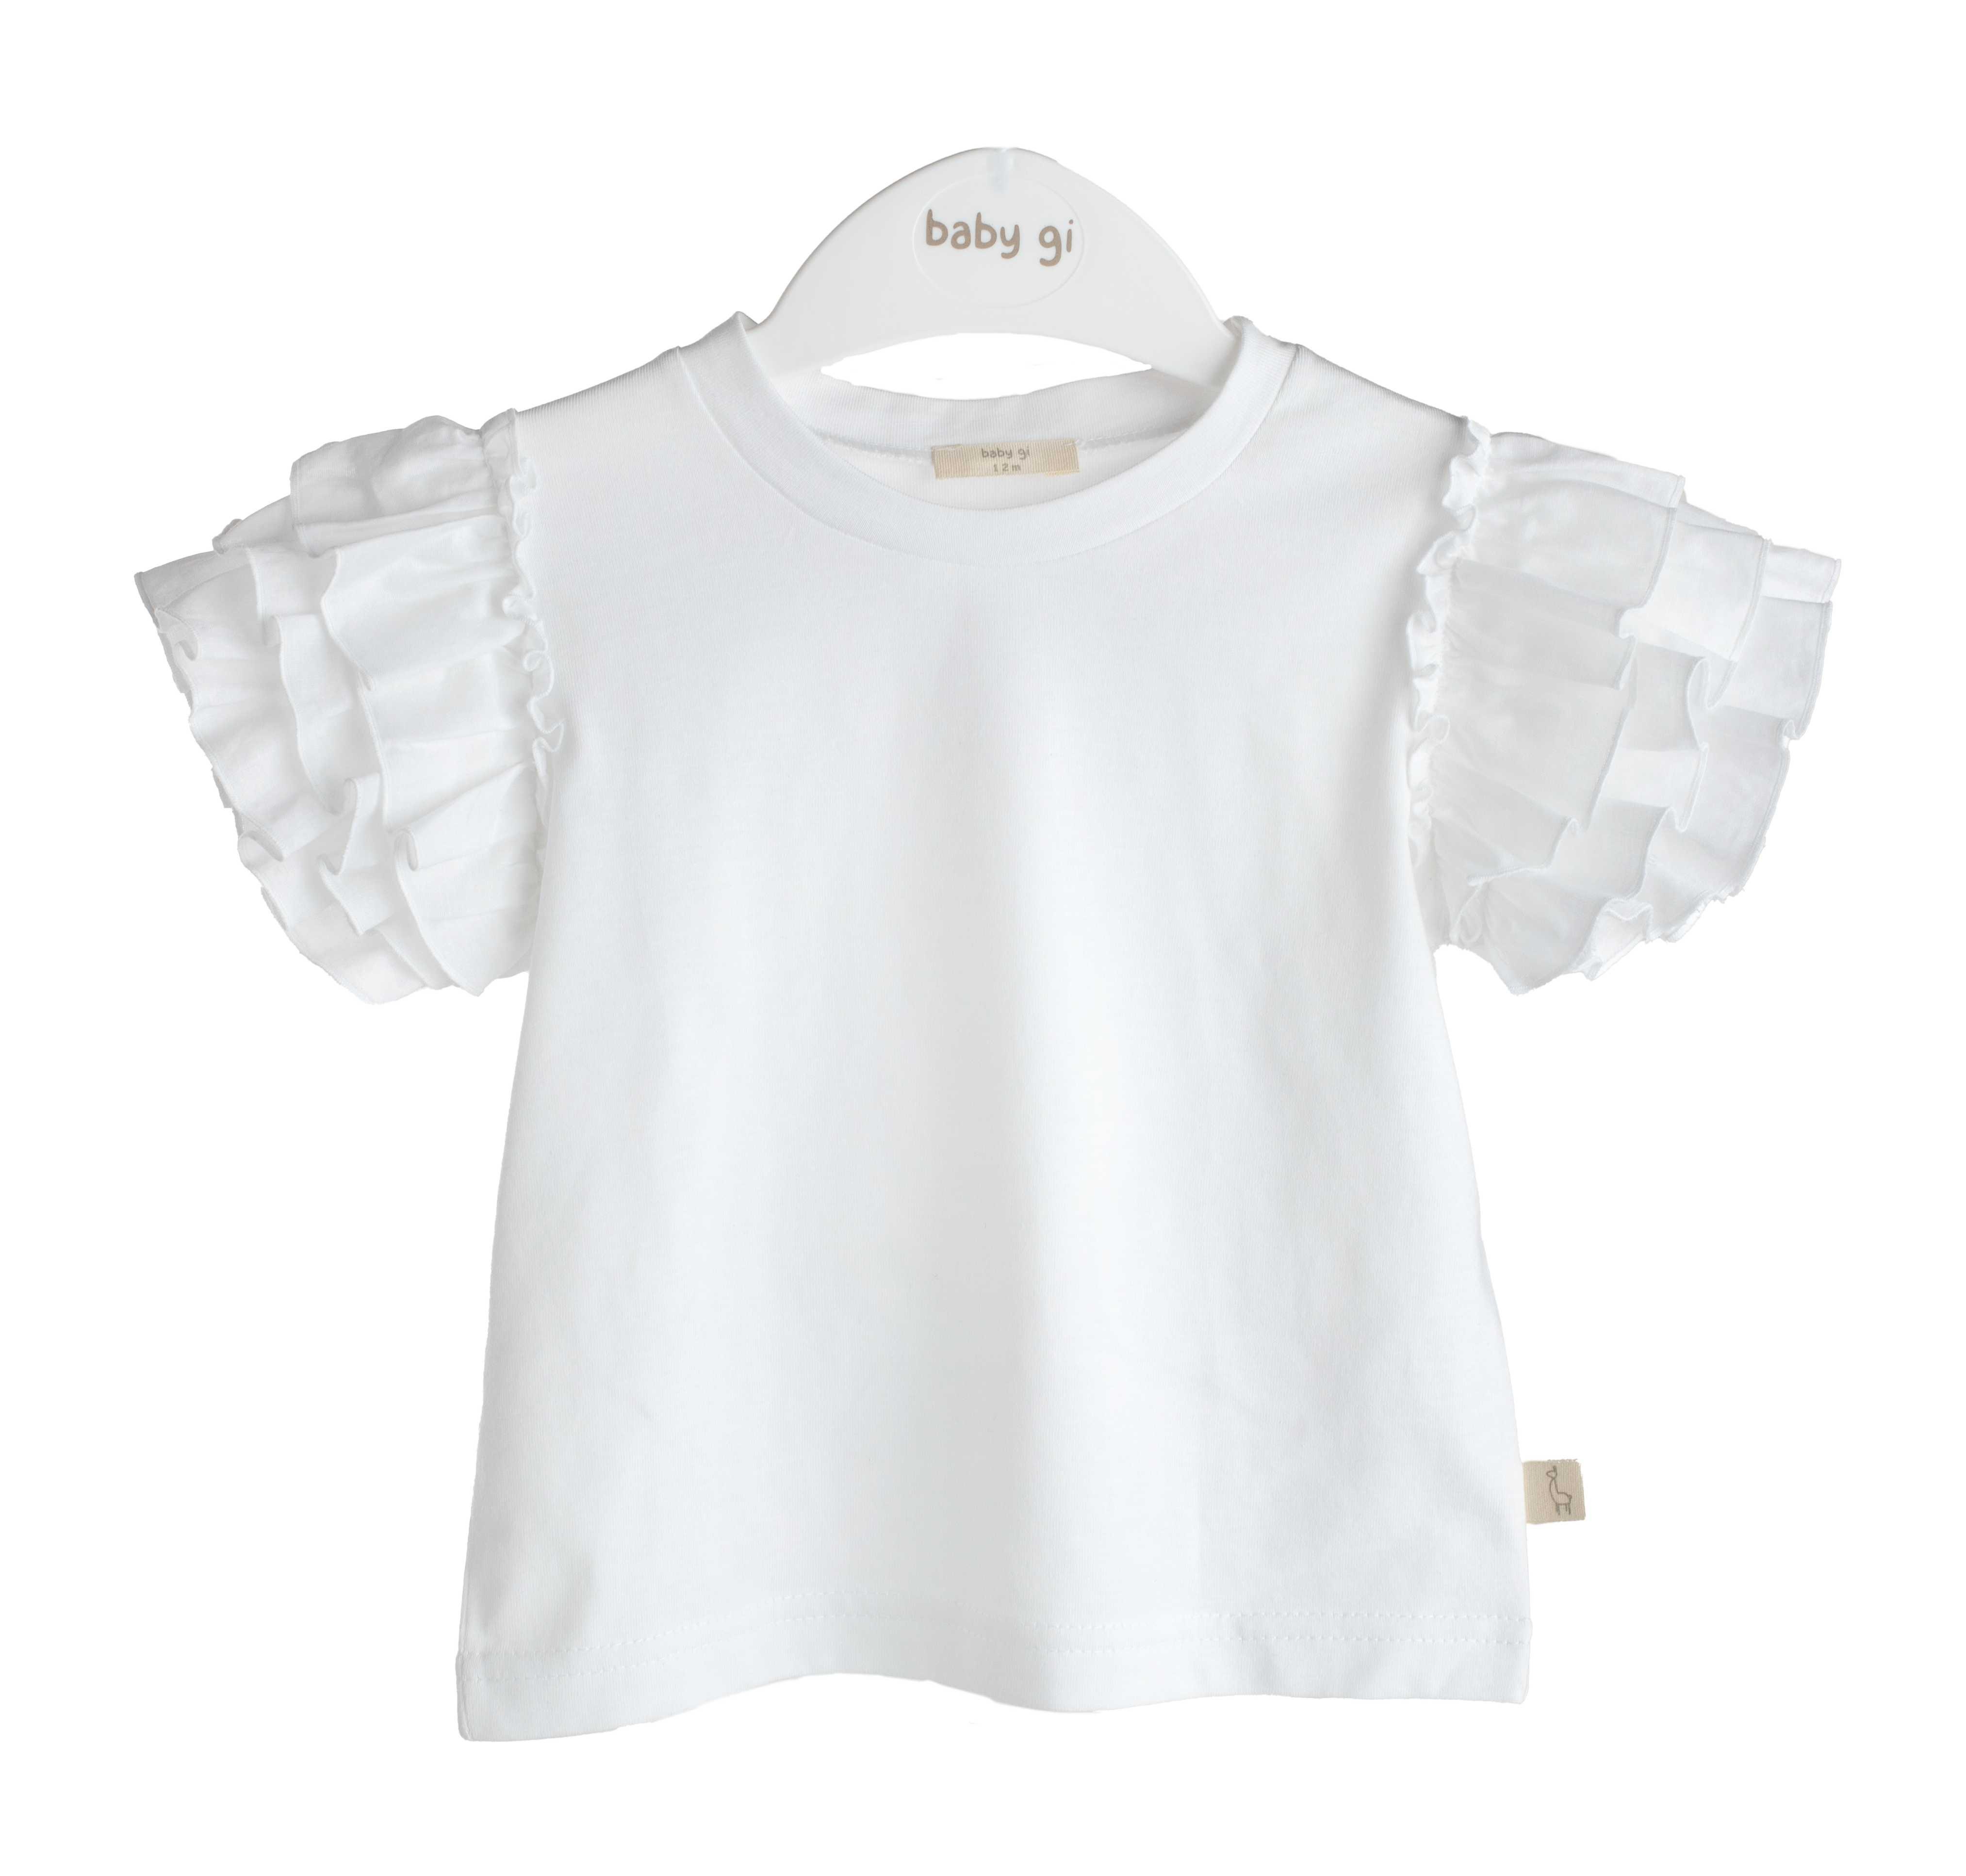 Baby Gi - T-shirt wit met franjes